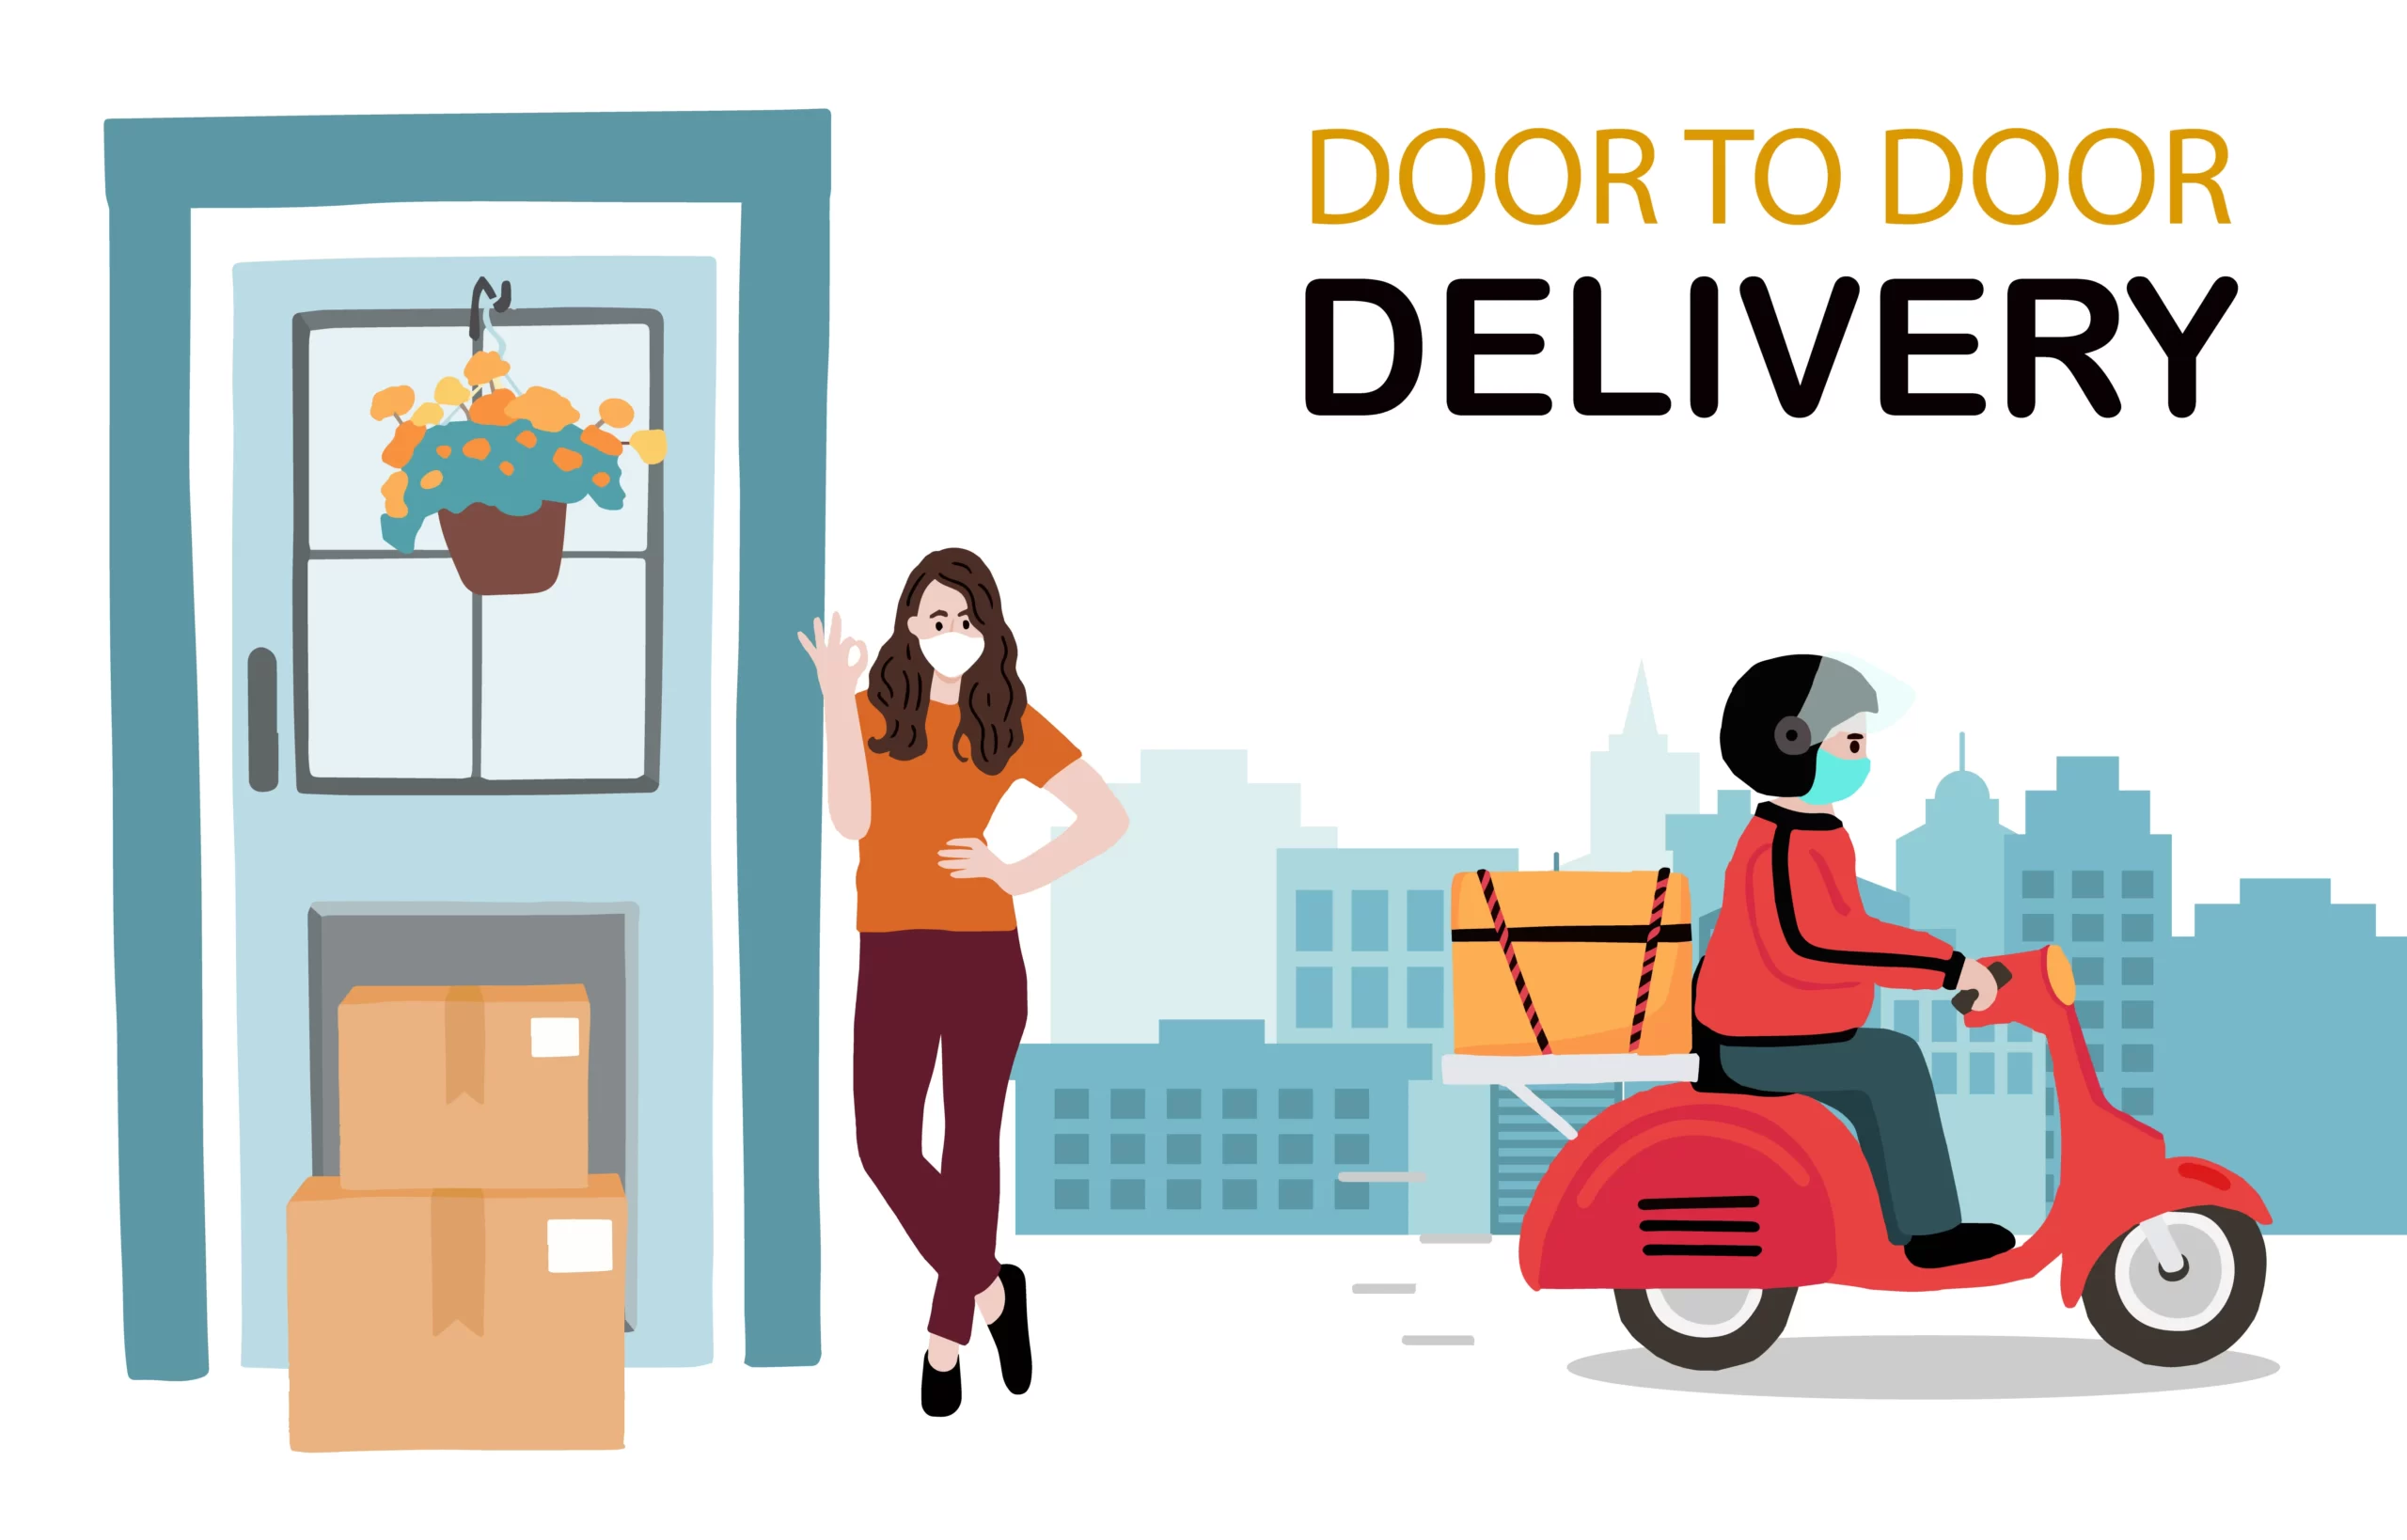 contactless-door-to-door-delivery-service-design-vector